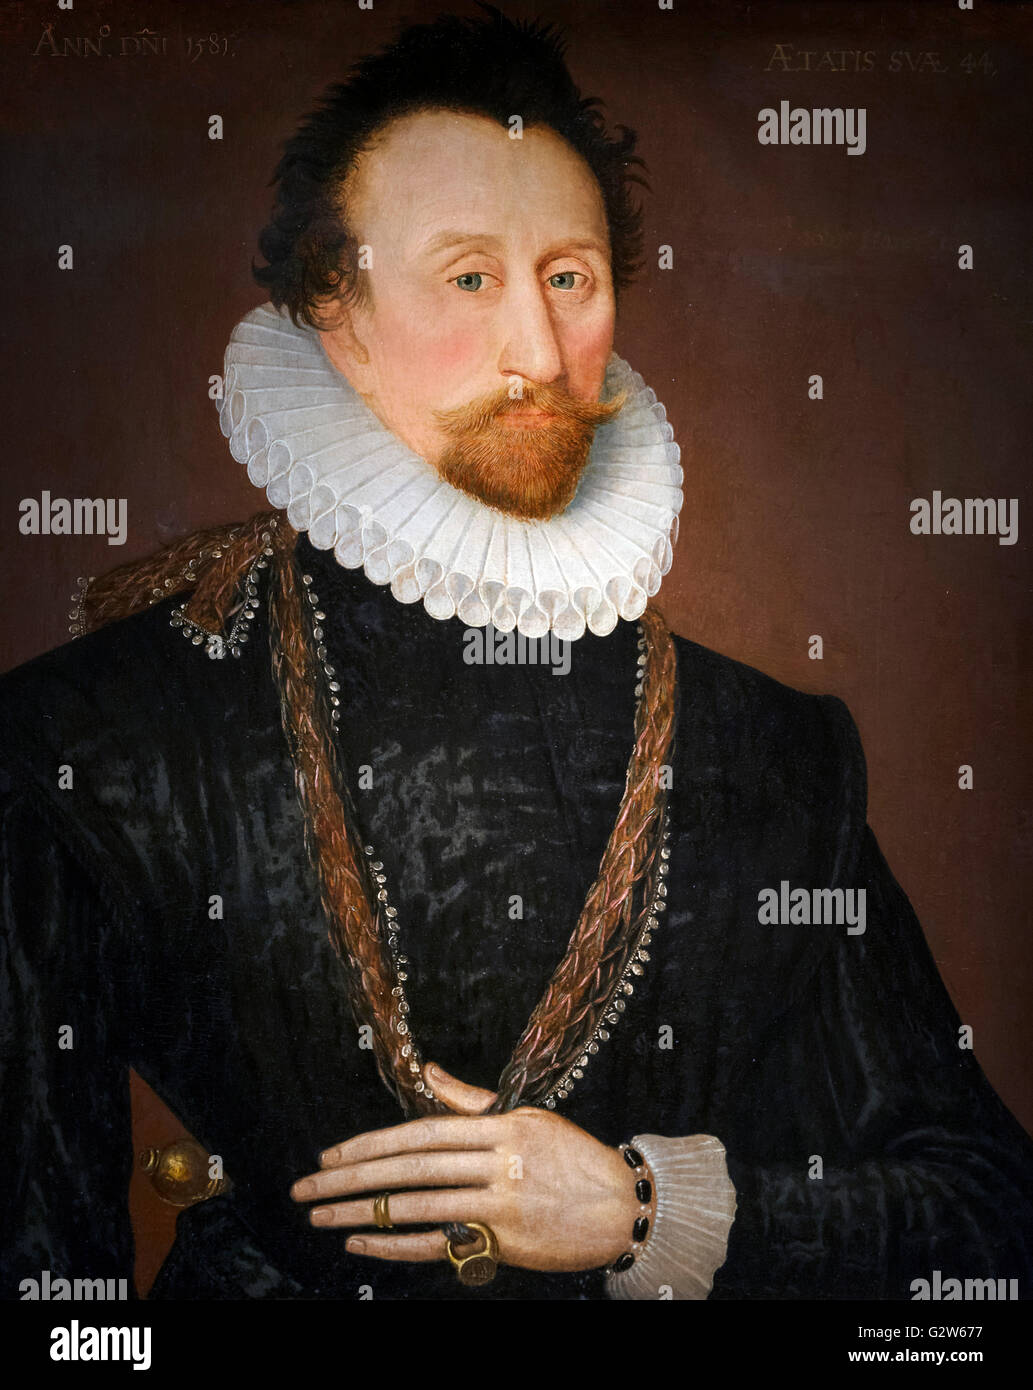 El Almirante Sir John Hawkins (1532-1595), un comandante naval inglés, el primer comerciante de esclavos inglés y un exitoso comerciante. Retrato, óleo sobre lienzo, escuela de inglés, 1581. Foto de stock